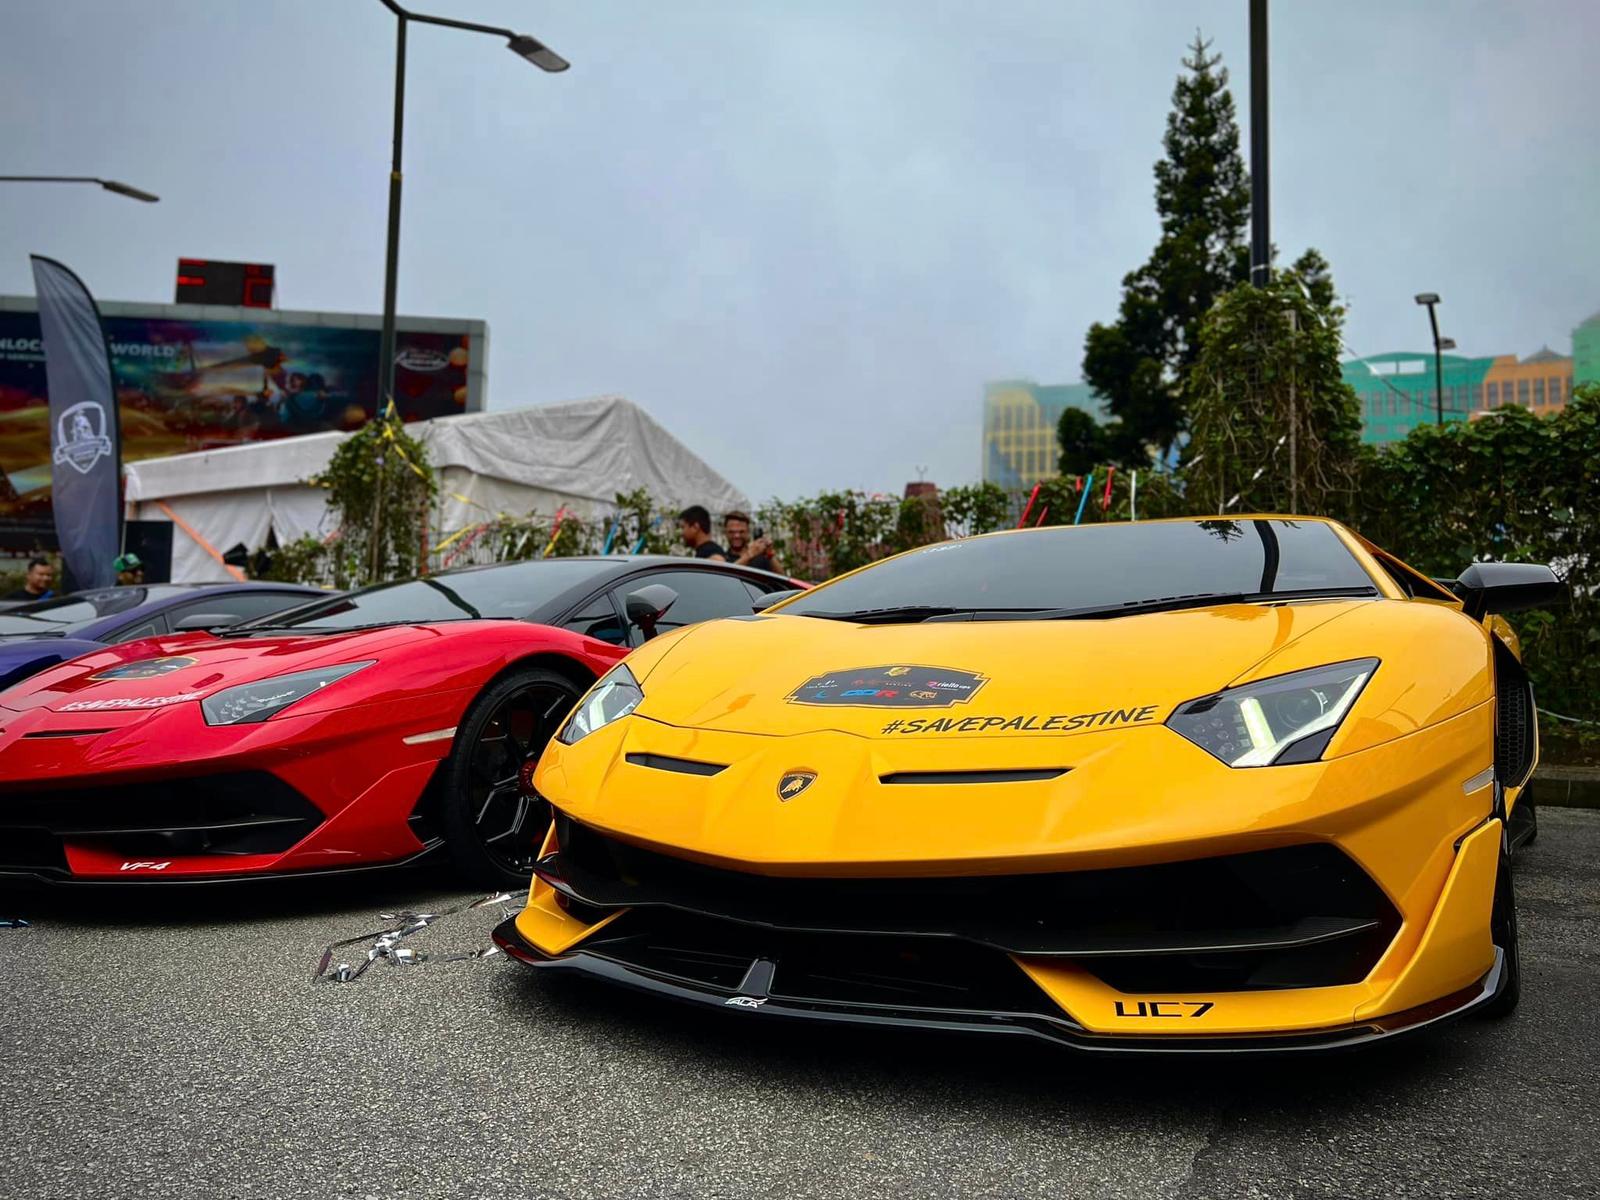 Largest Lamborghini Gathering in Malaysia